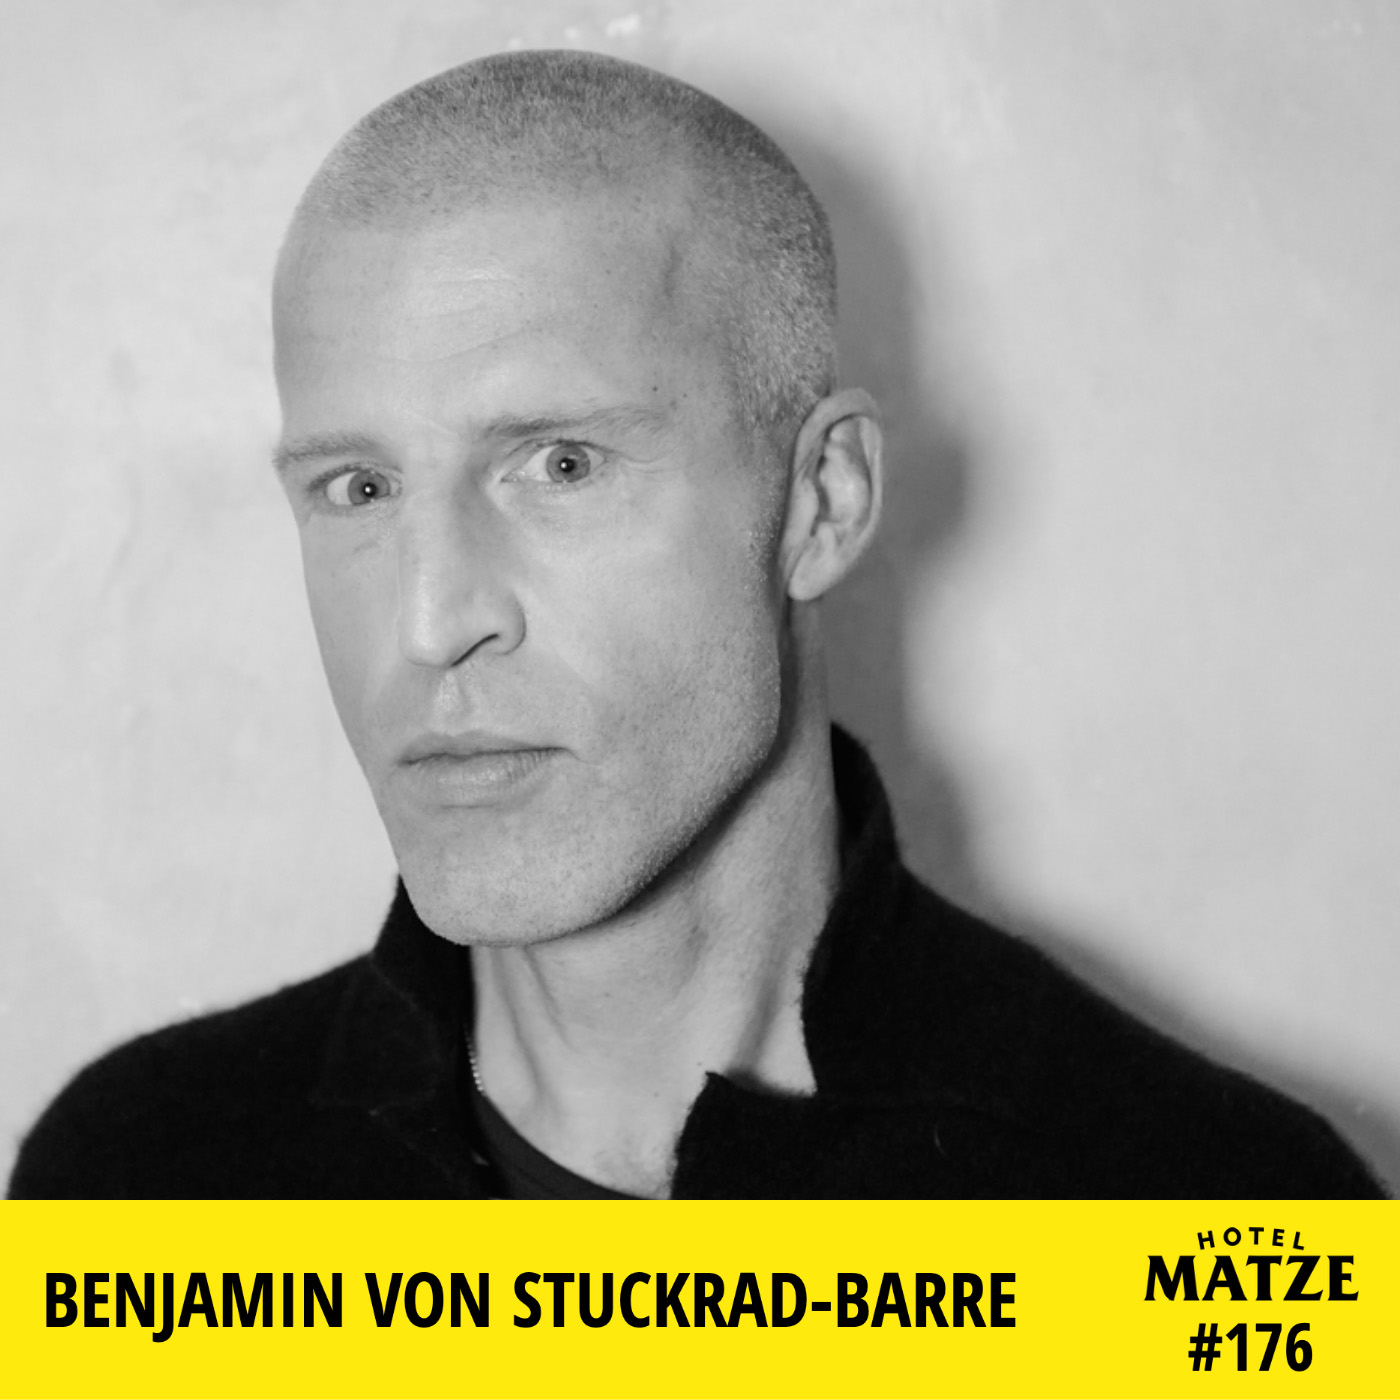 Benjamin von Stuckrad-Barre 2021 – Liebe usw.